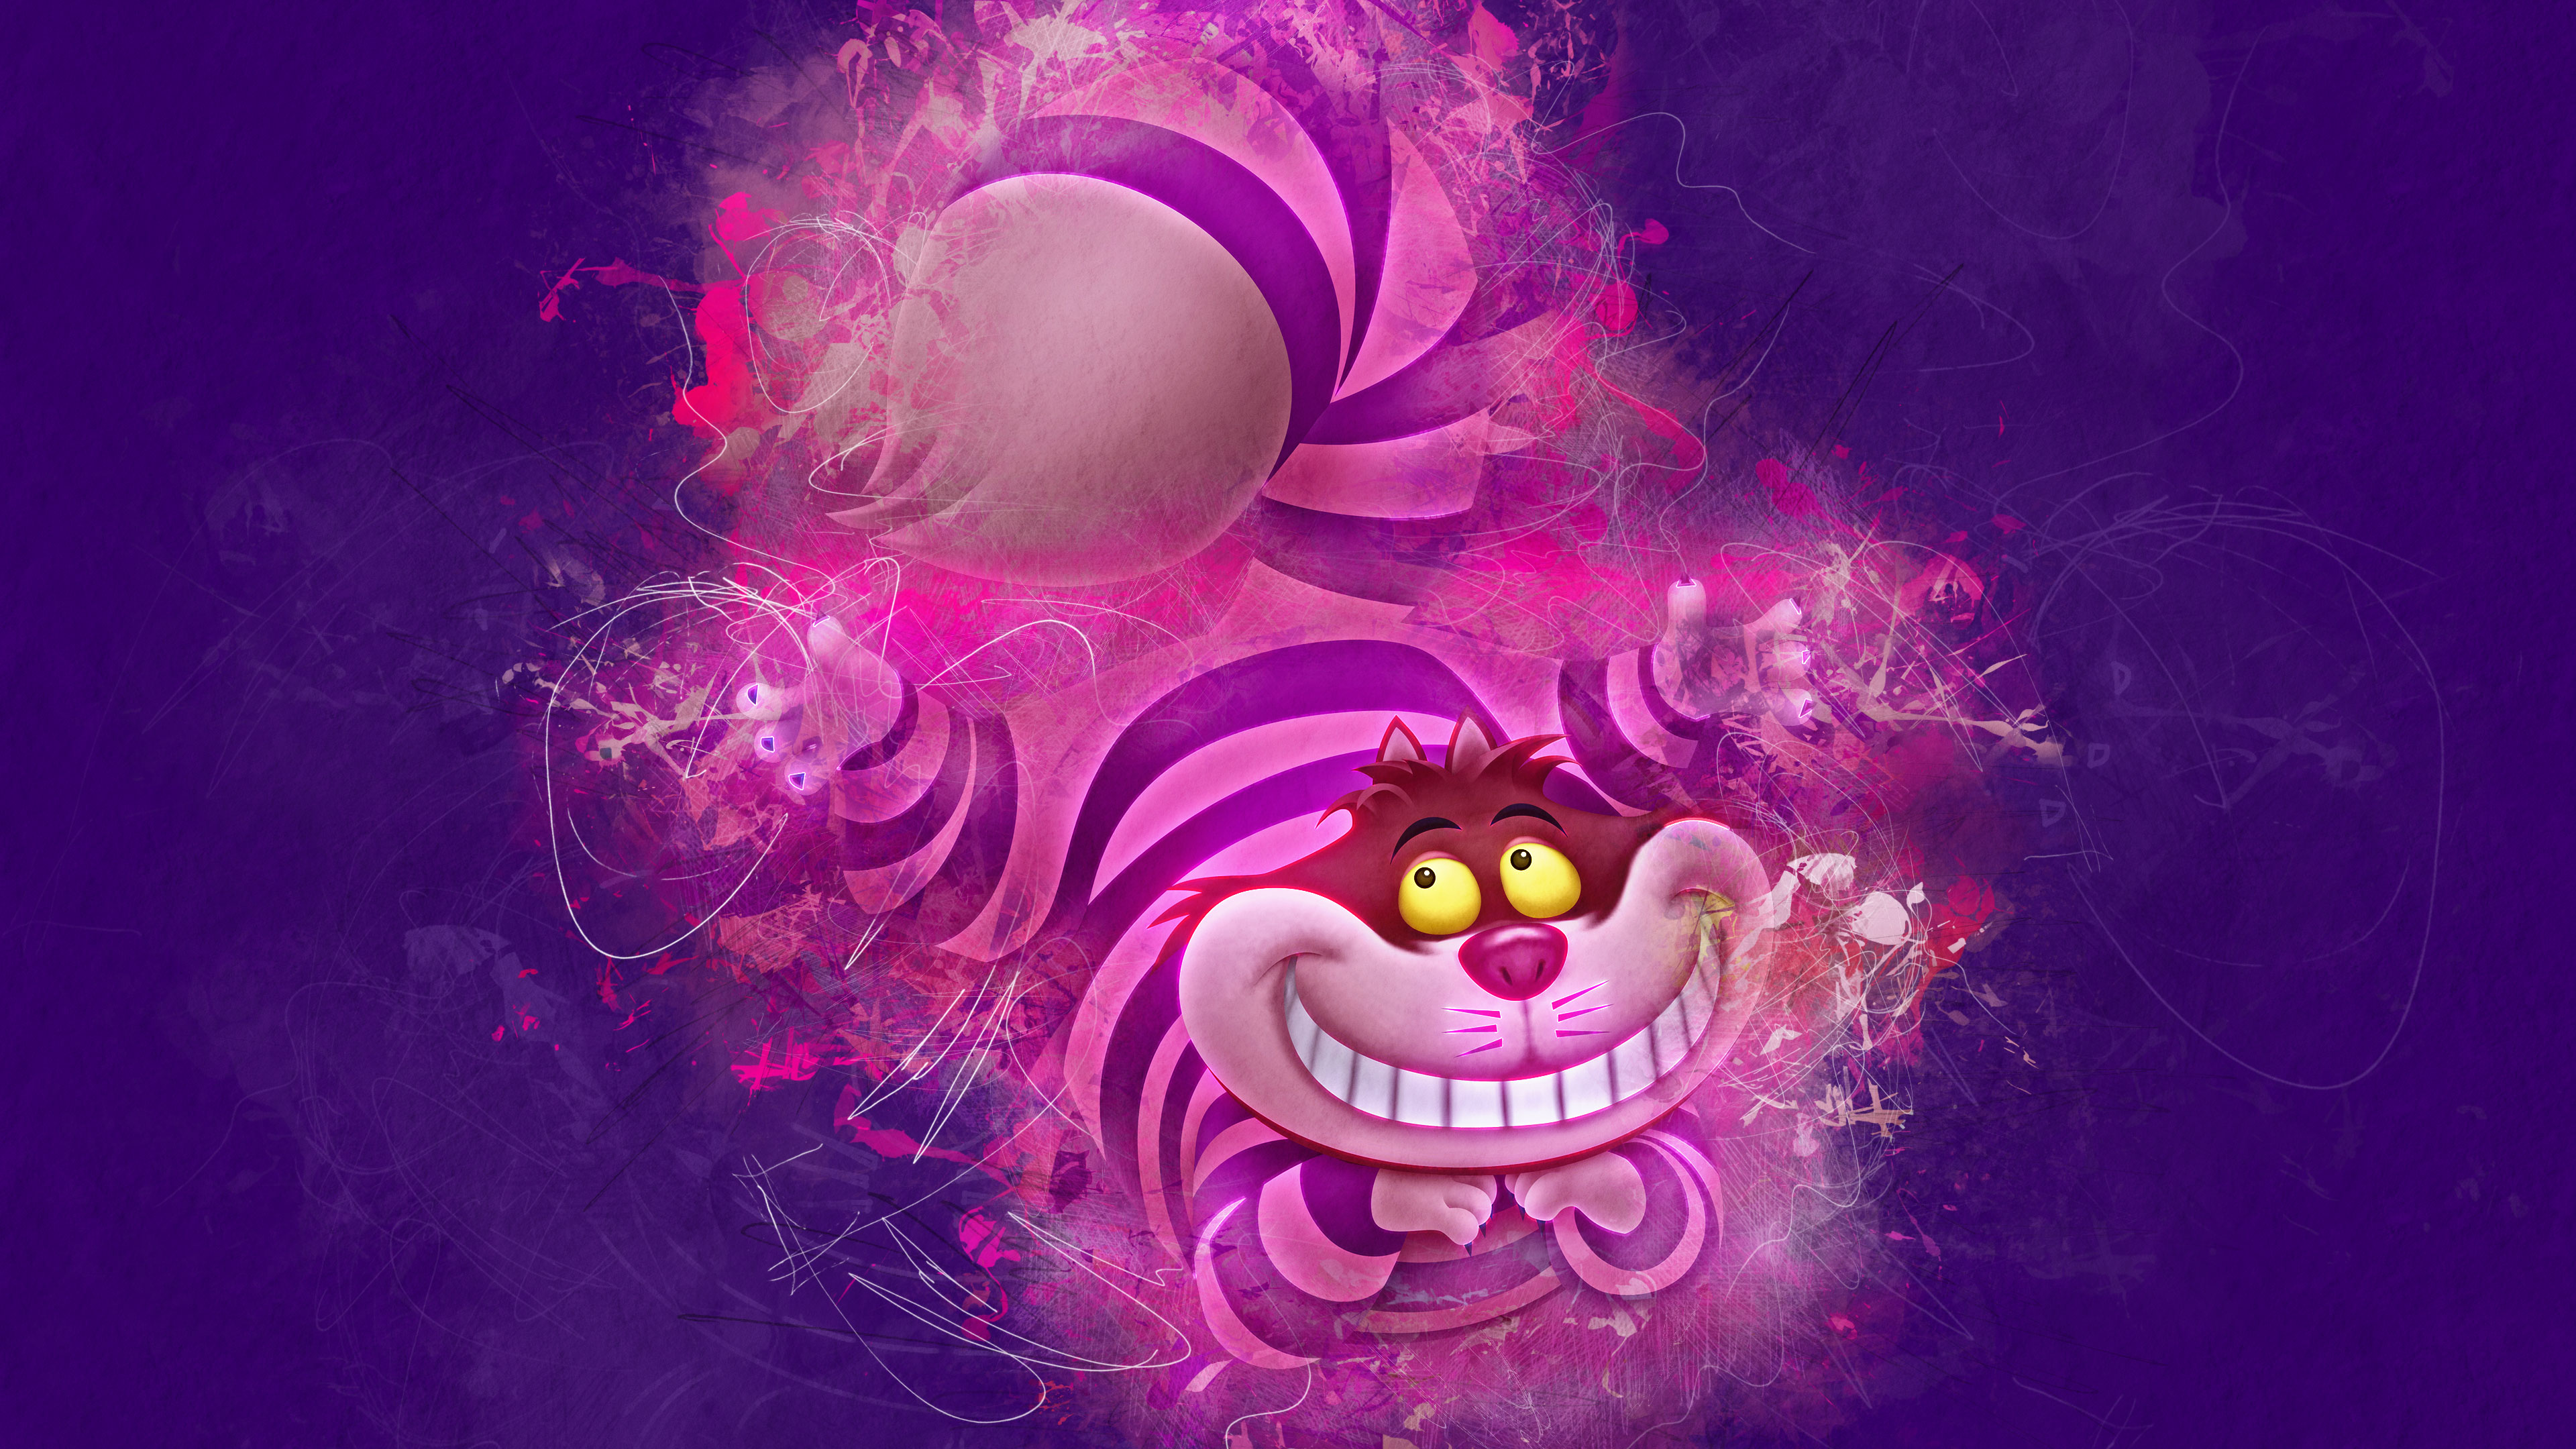 Hero Artwork Alice In Wonderland Cheshire Cat 3840x2160